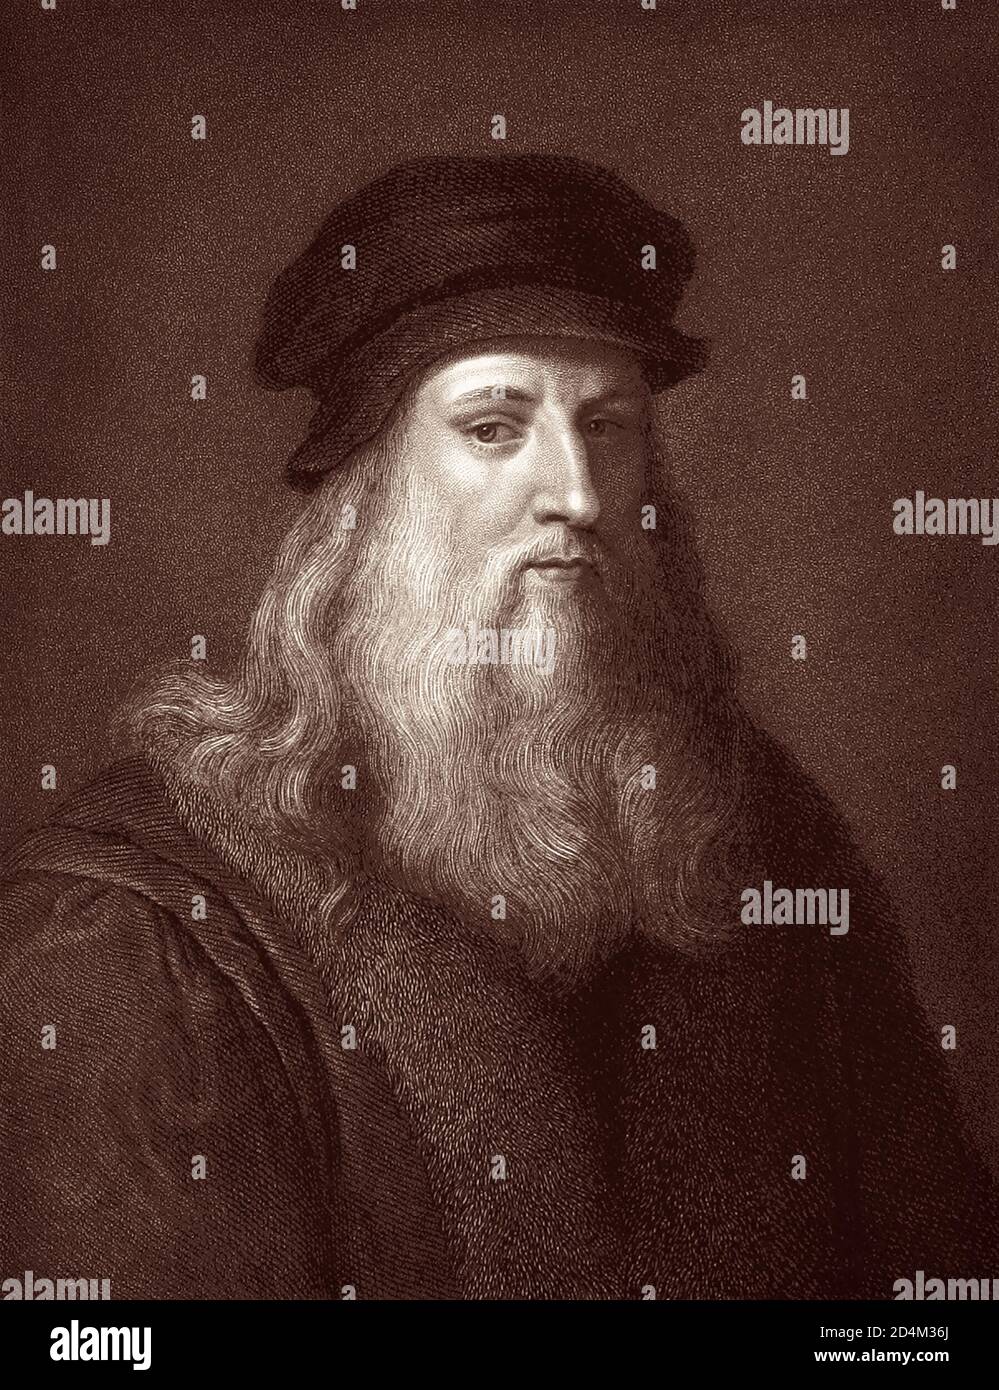 Leonardo da Vinci (1452-1519), italienischer Universalgelehrter der Hochrenaissance, gilt weithin als einer der größten Maler aller Zeiten. Stockfoto